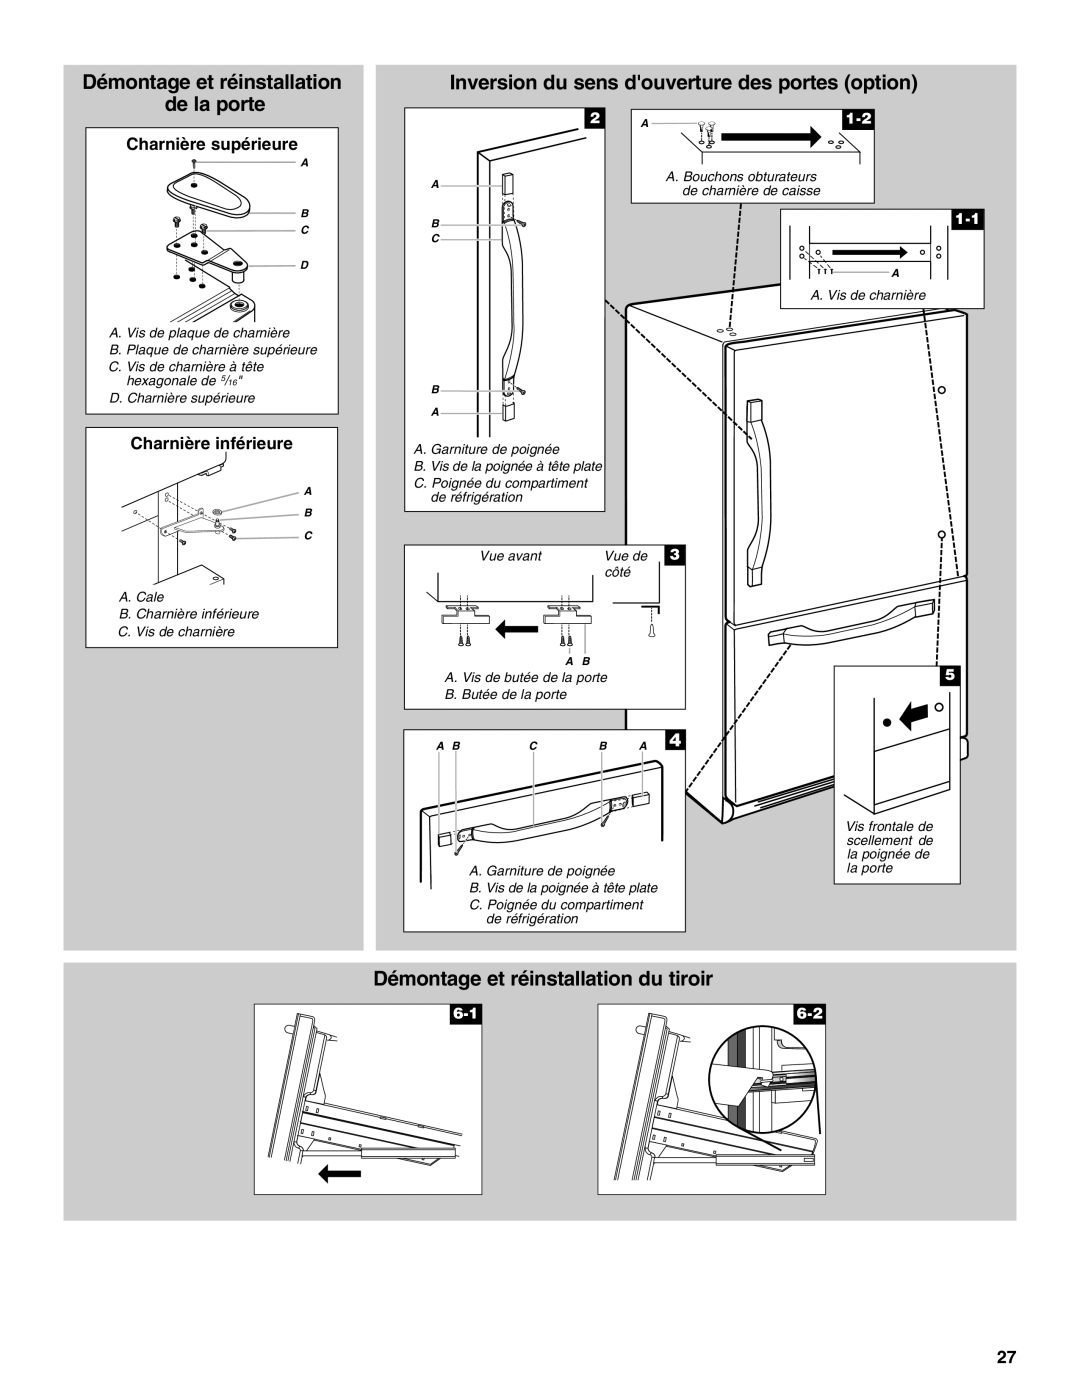 Whirlpool GB2SHDXPB00 manual Démontage et réinstallation de la porte, Inversion du sens douverture des portes option 